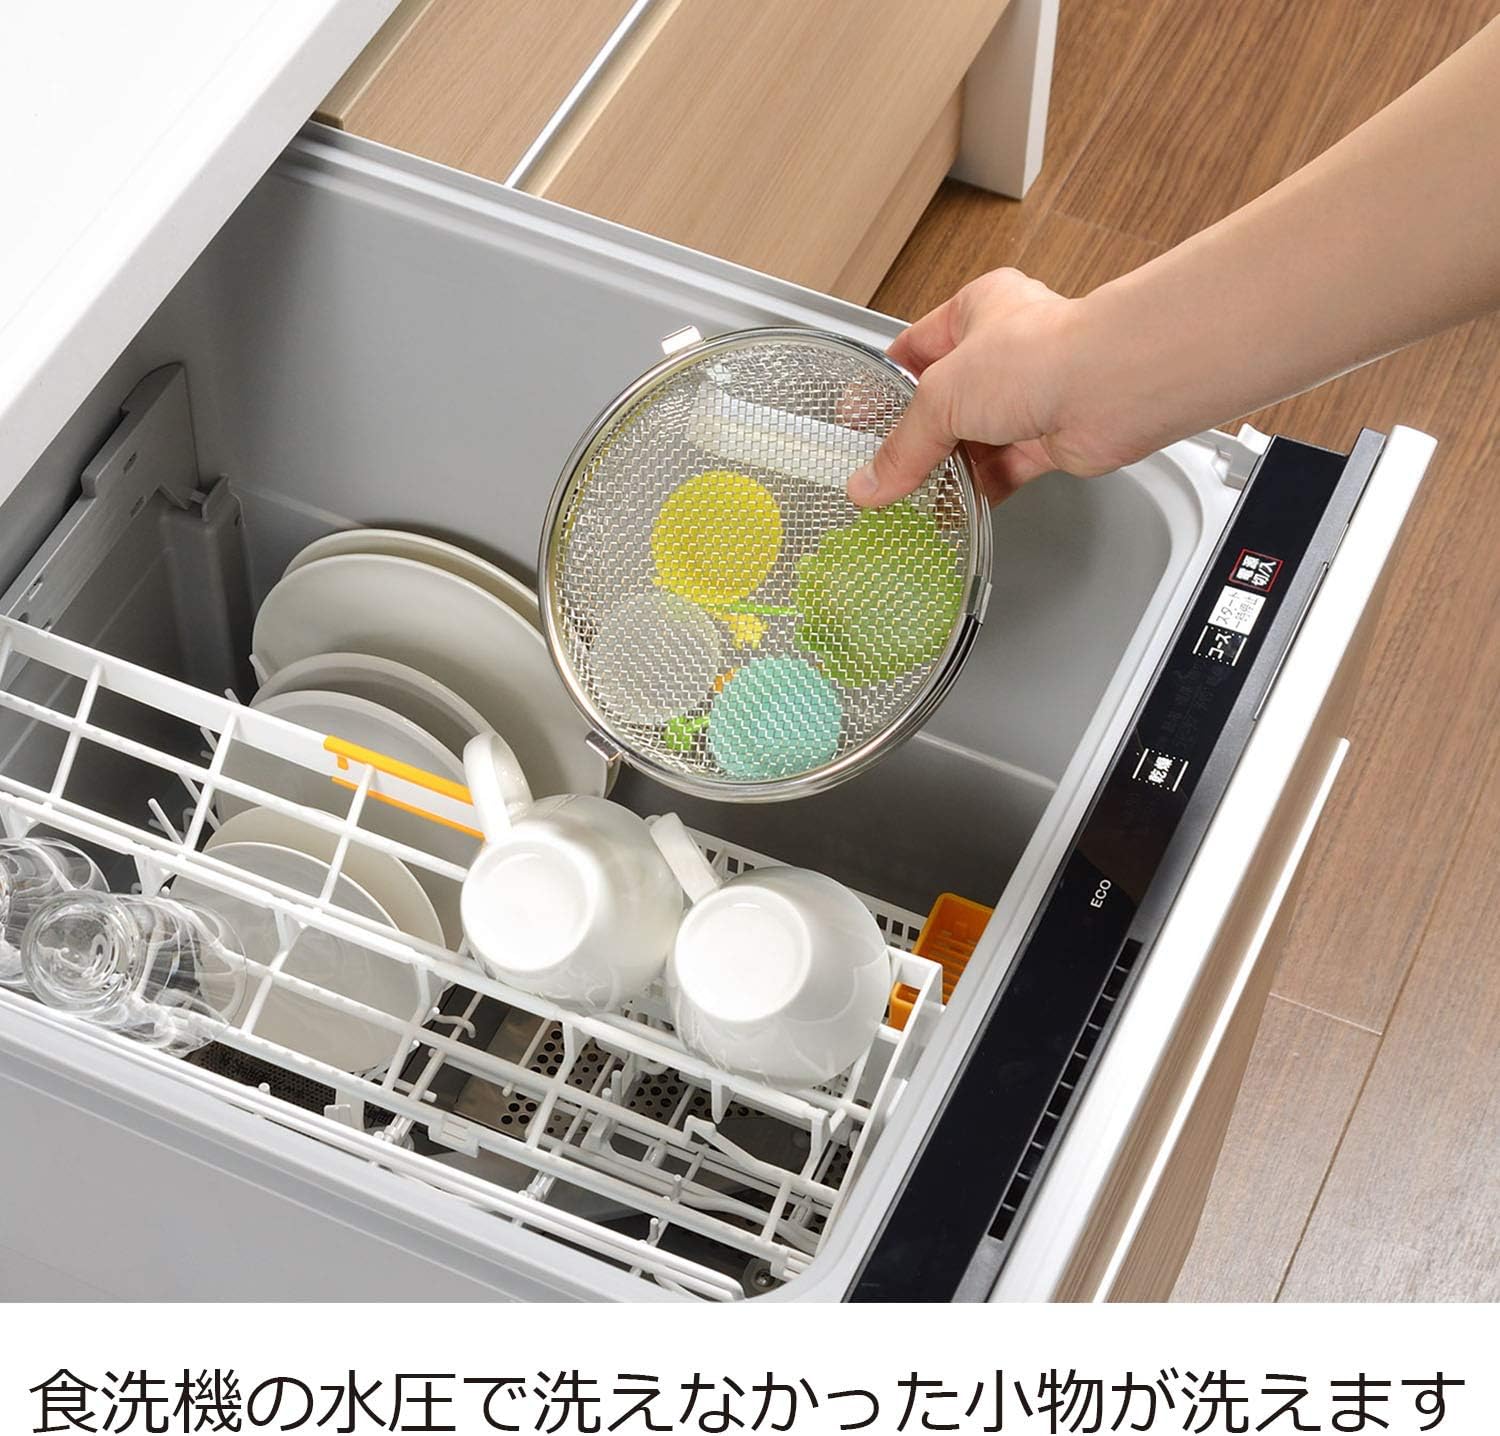 食洗機対応の水筒おすすめ商品比較一覧表